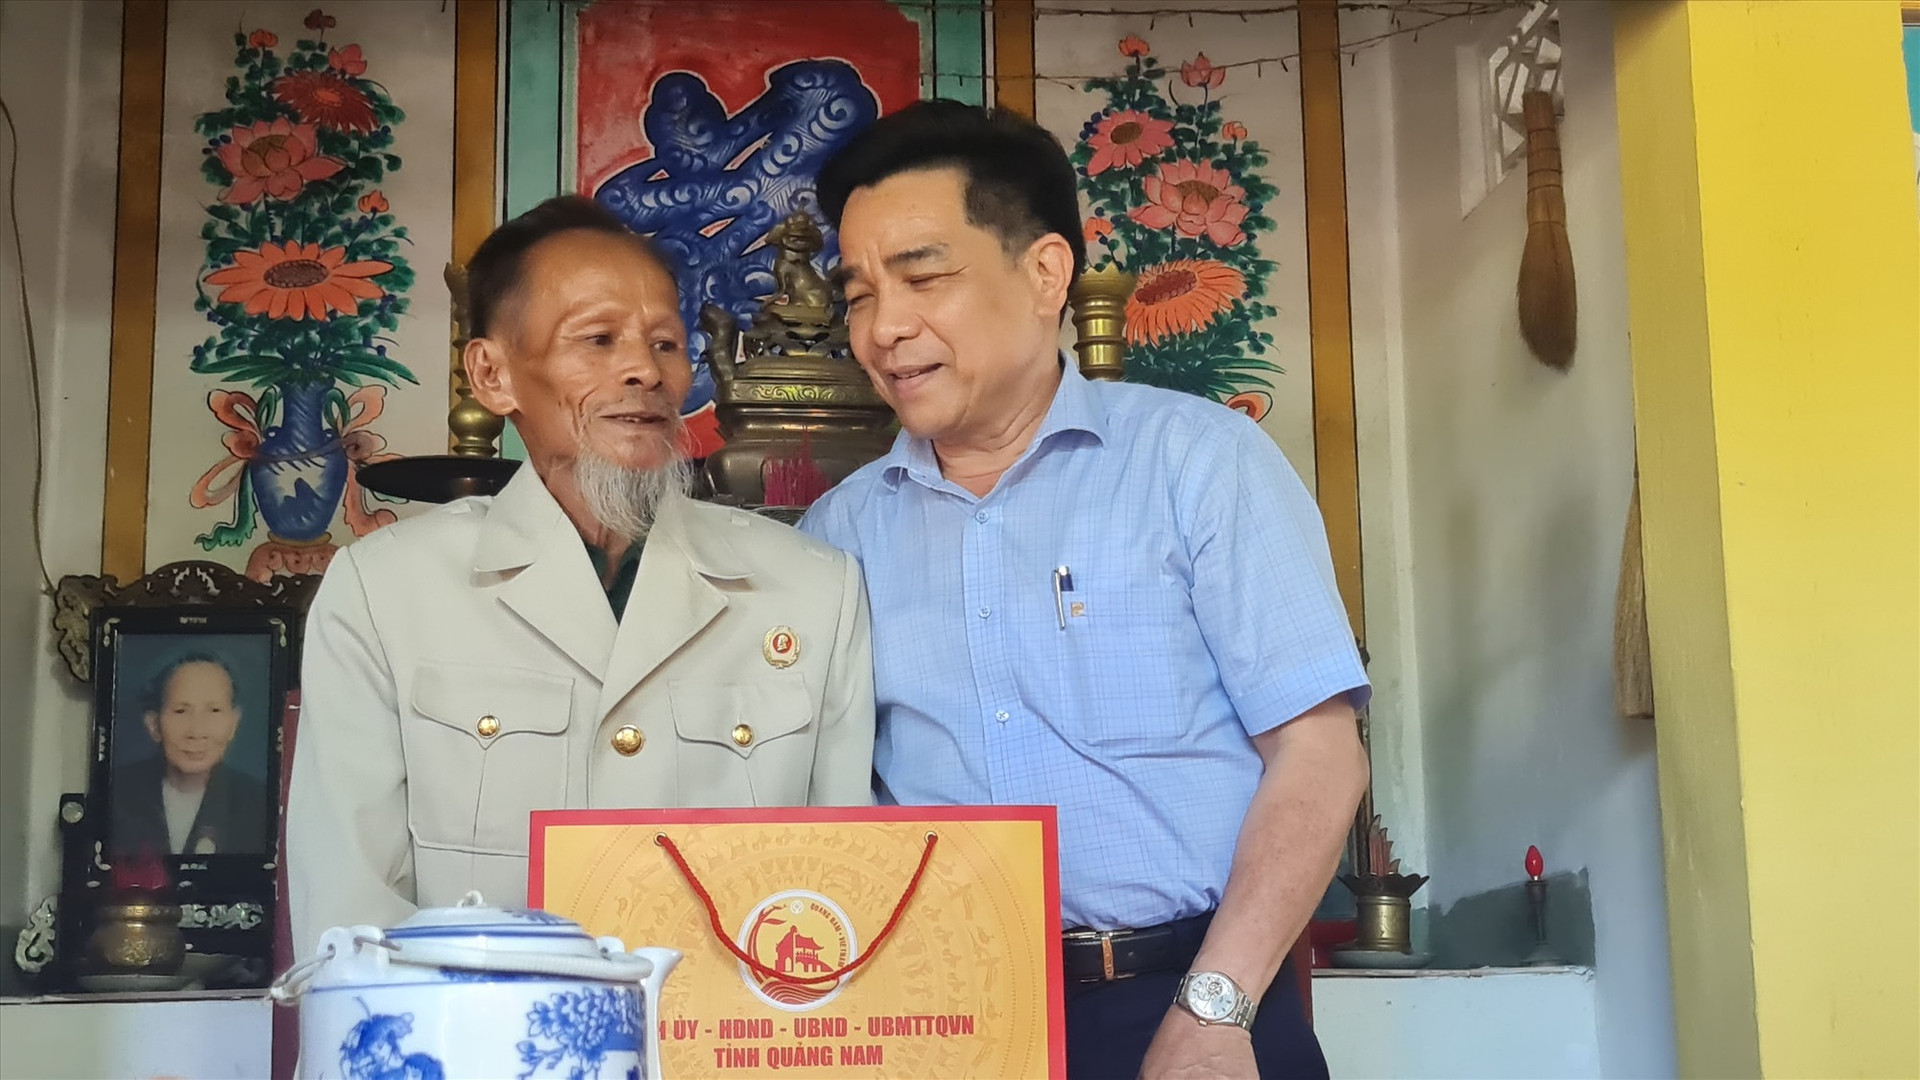 Phó Bí thư Thường trực Tỉnh ủy Lê Văn Dũng tặng quà cho ông Huỳnh Thu. Ảnh: D.L